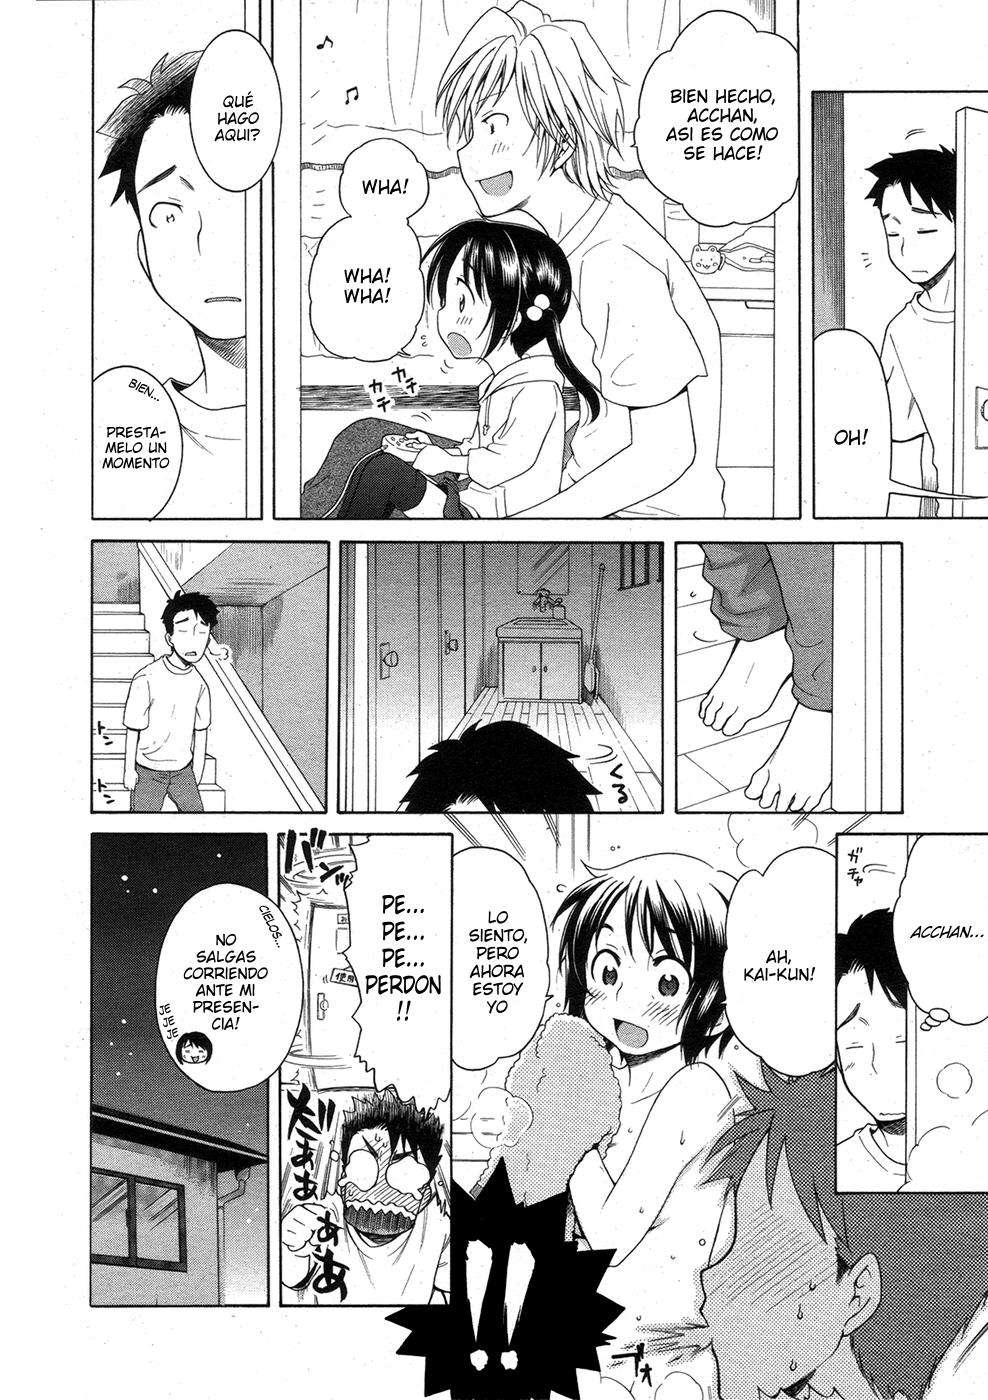 Tsukimisou No Akari (La Luz Del Apartamento Tsukimi) Chapter-3 - 3